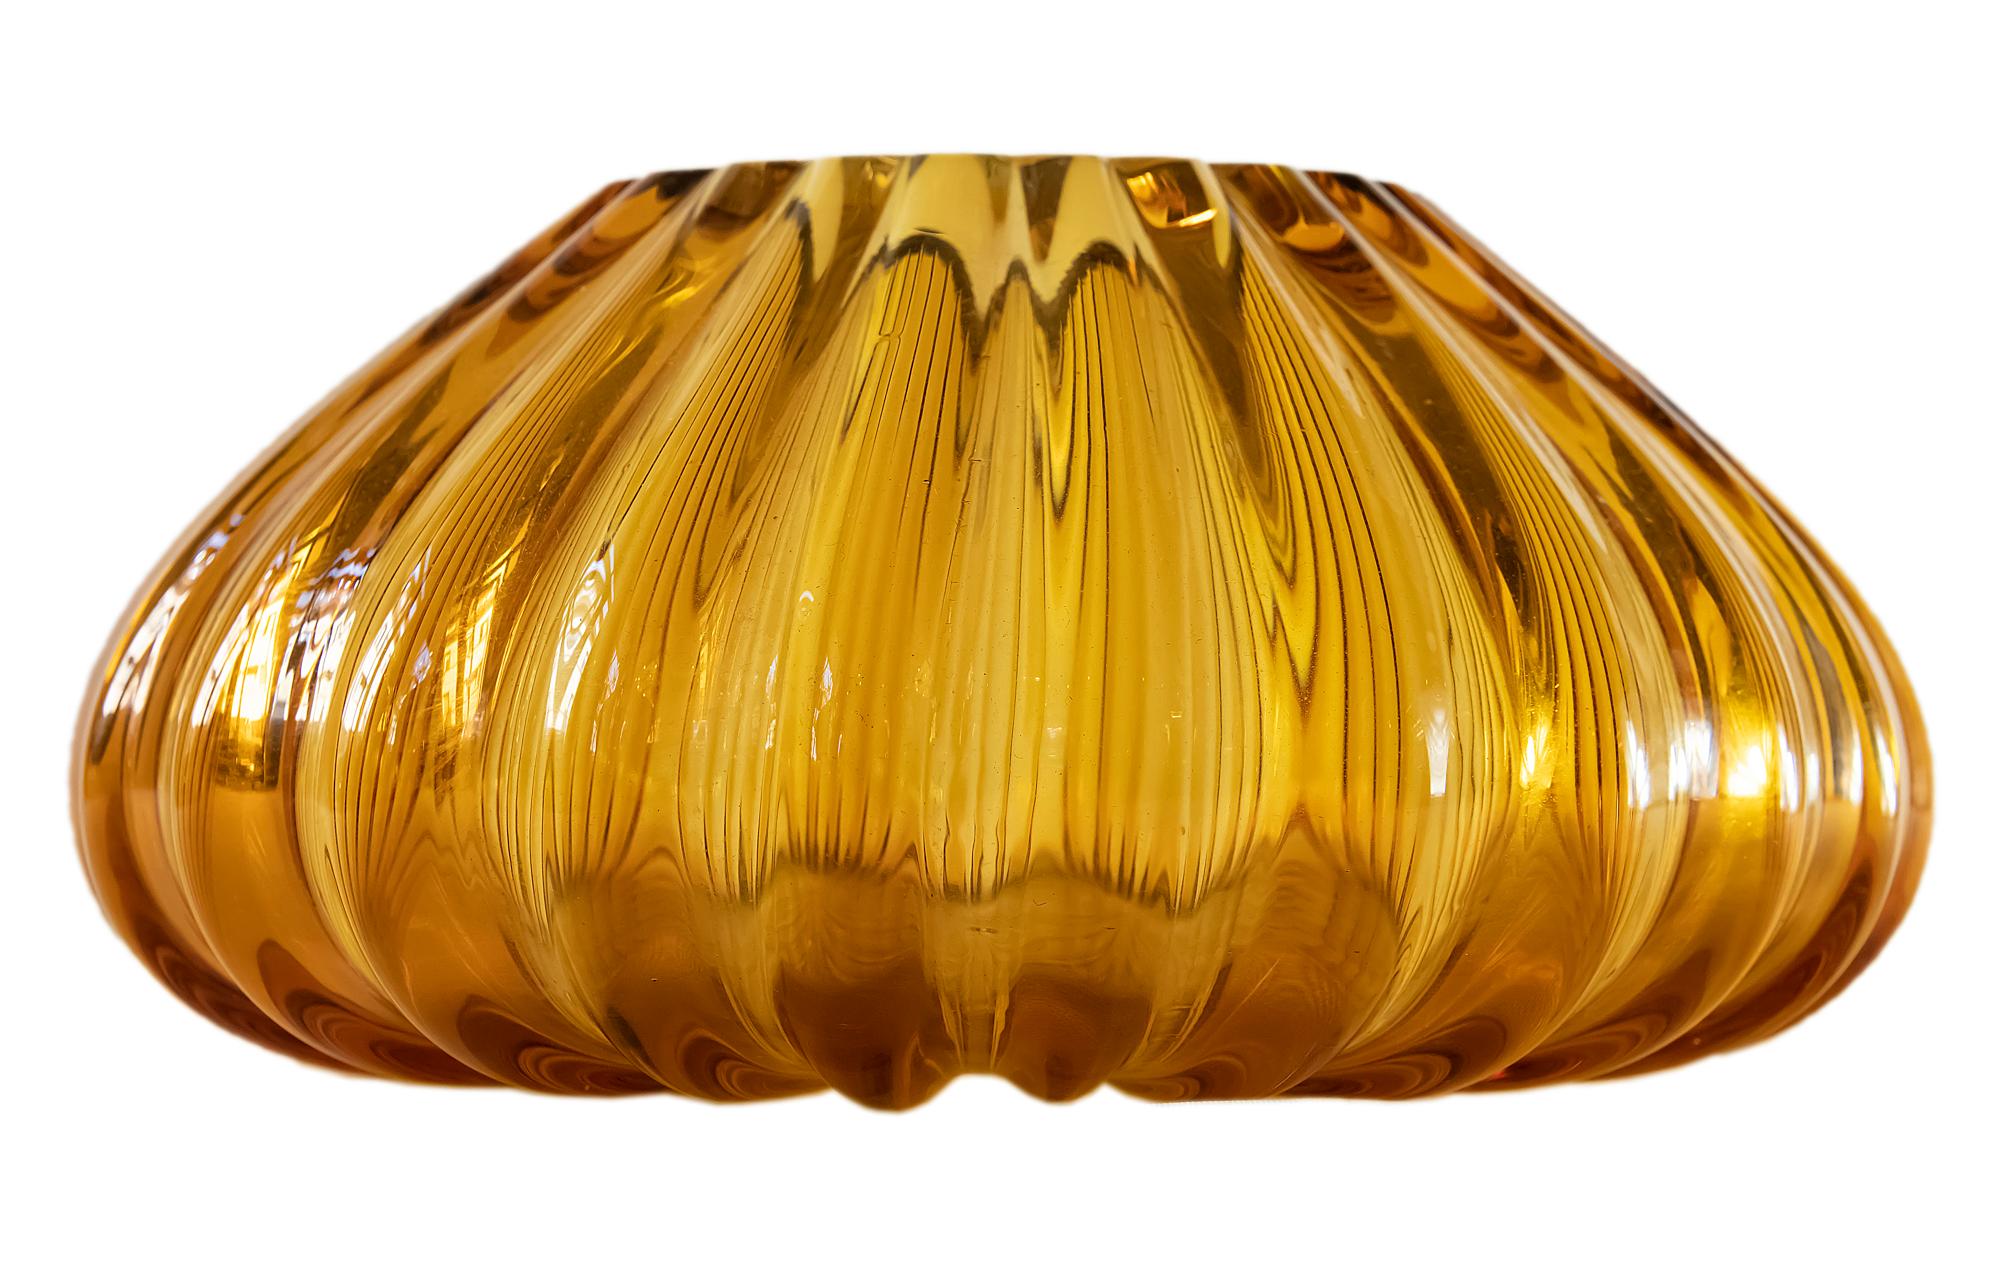 Hand-Crafted Italian Handmade Murano Glass Vase